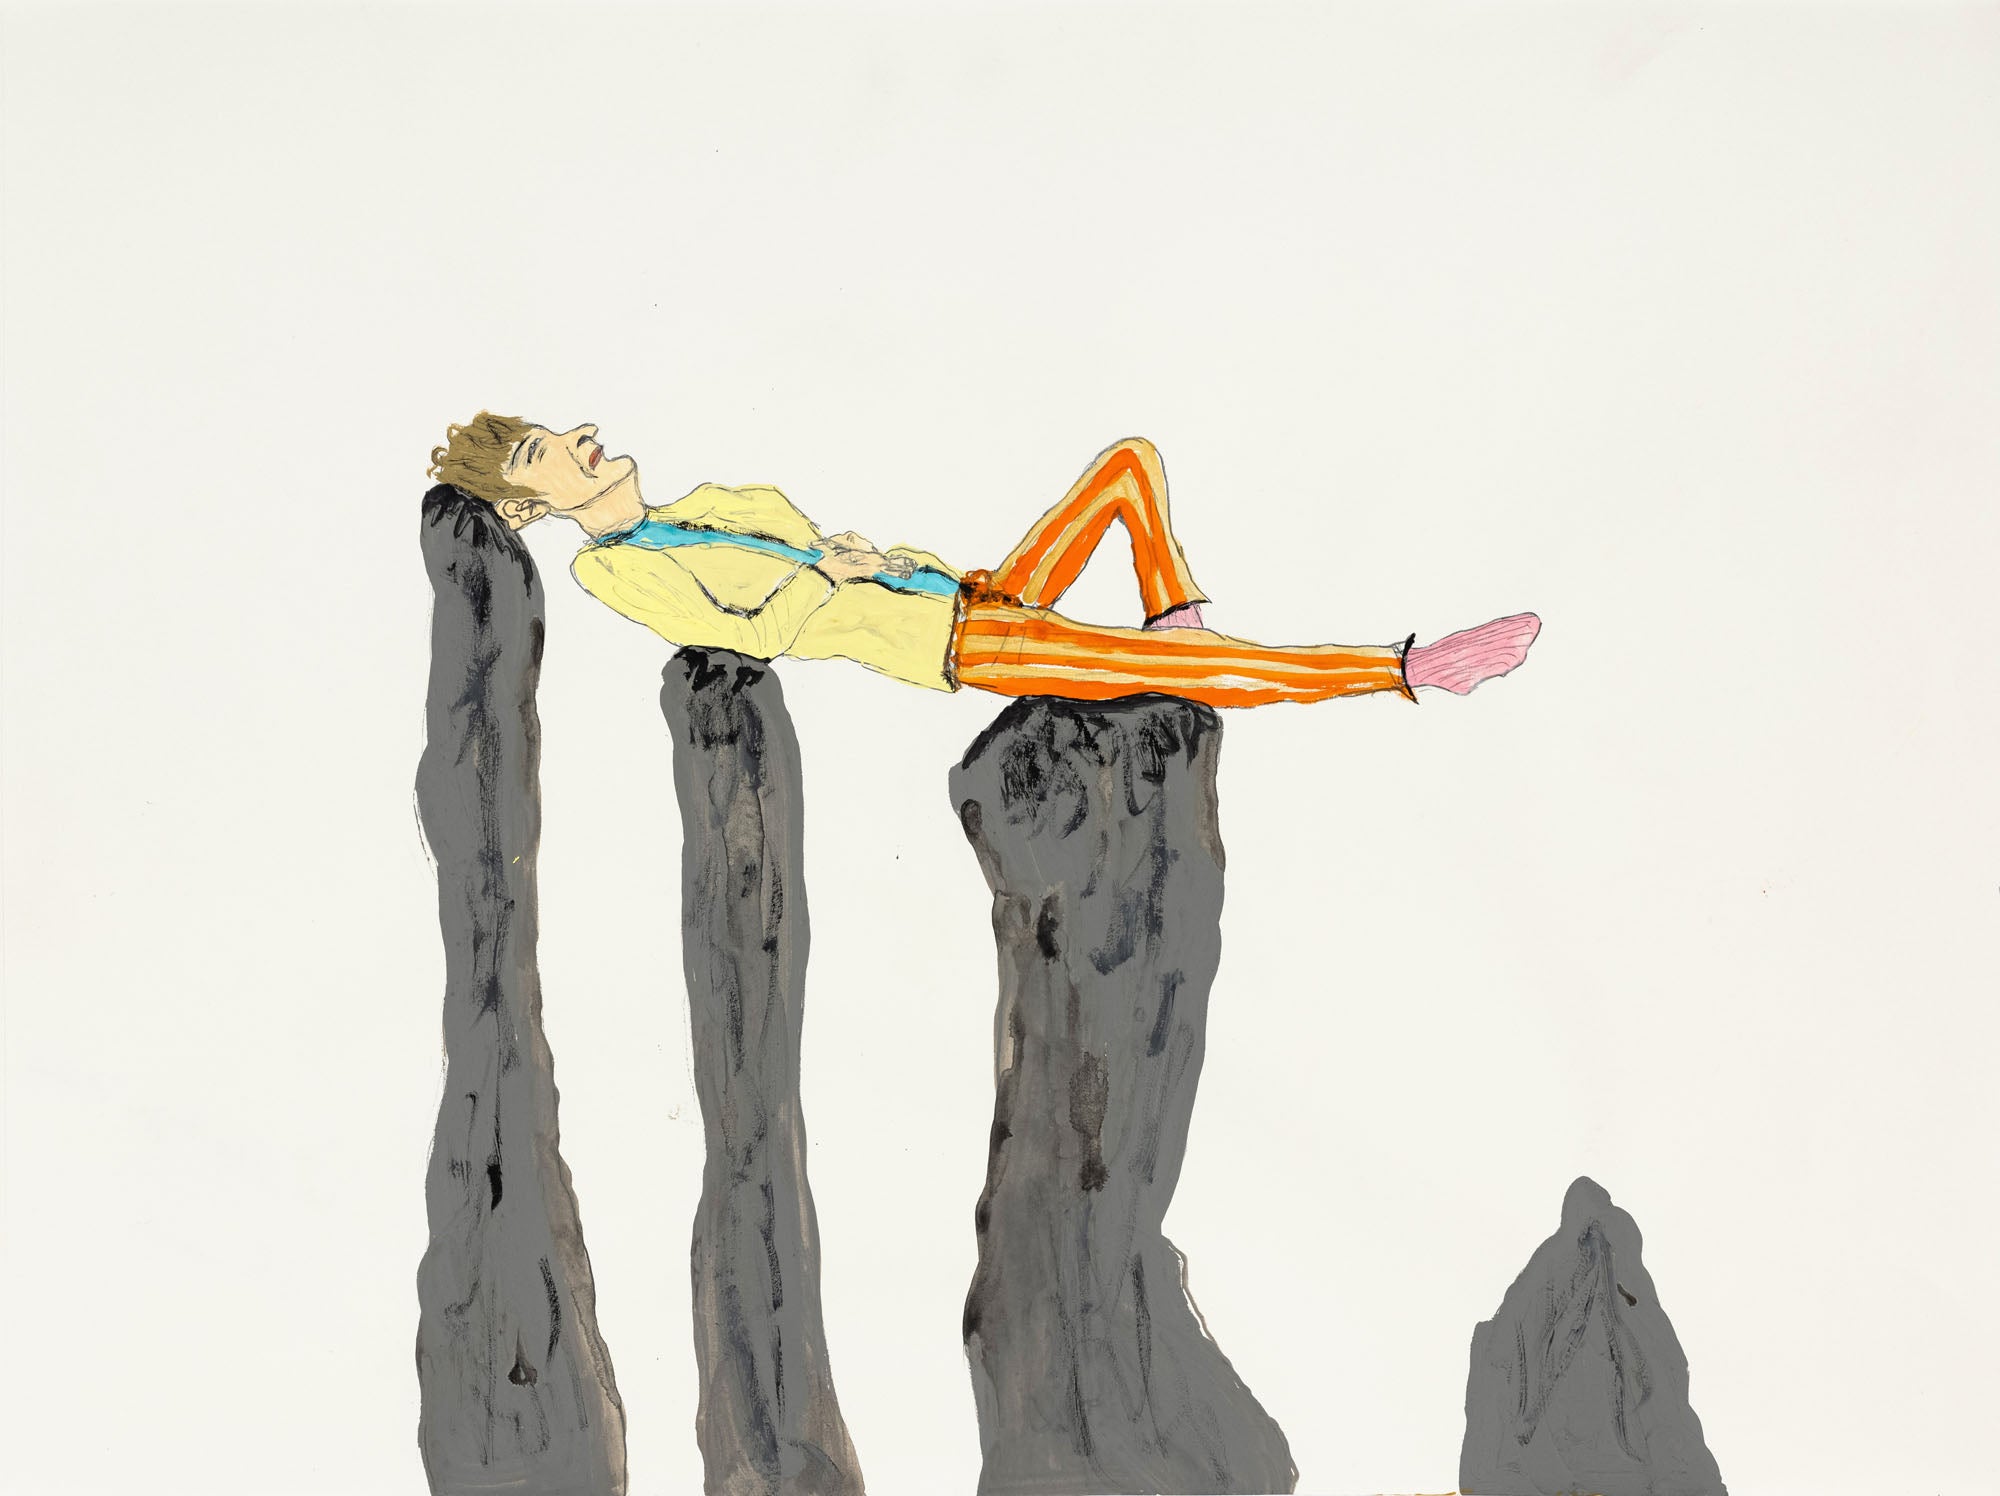 Eve Wood – Napping on Stone Henge, 2020